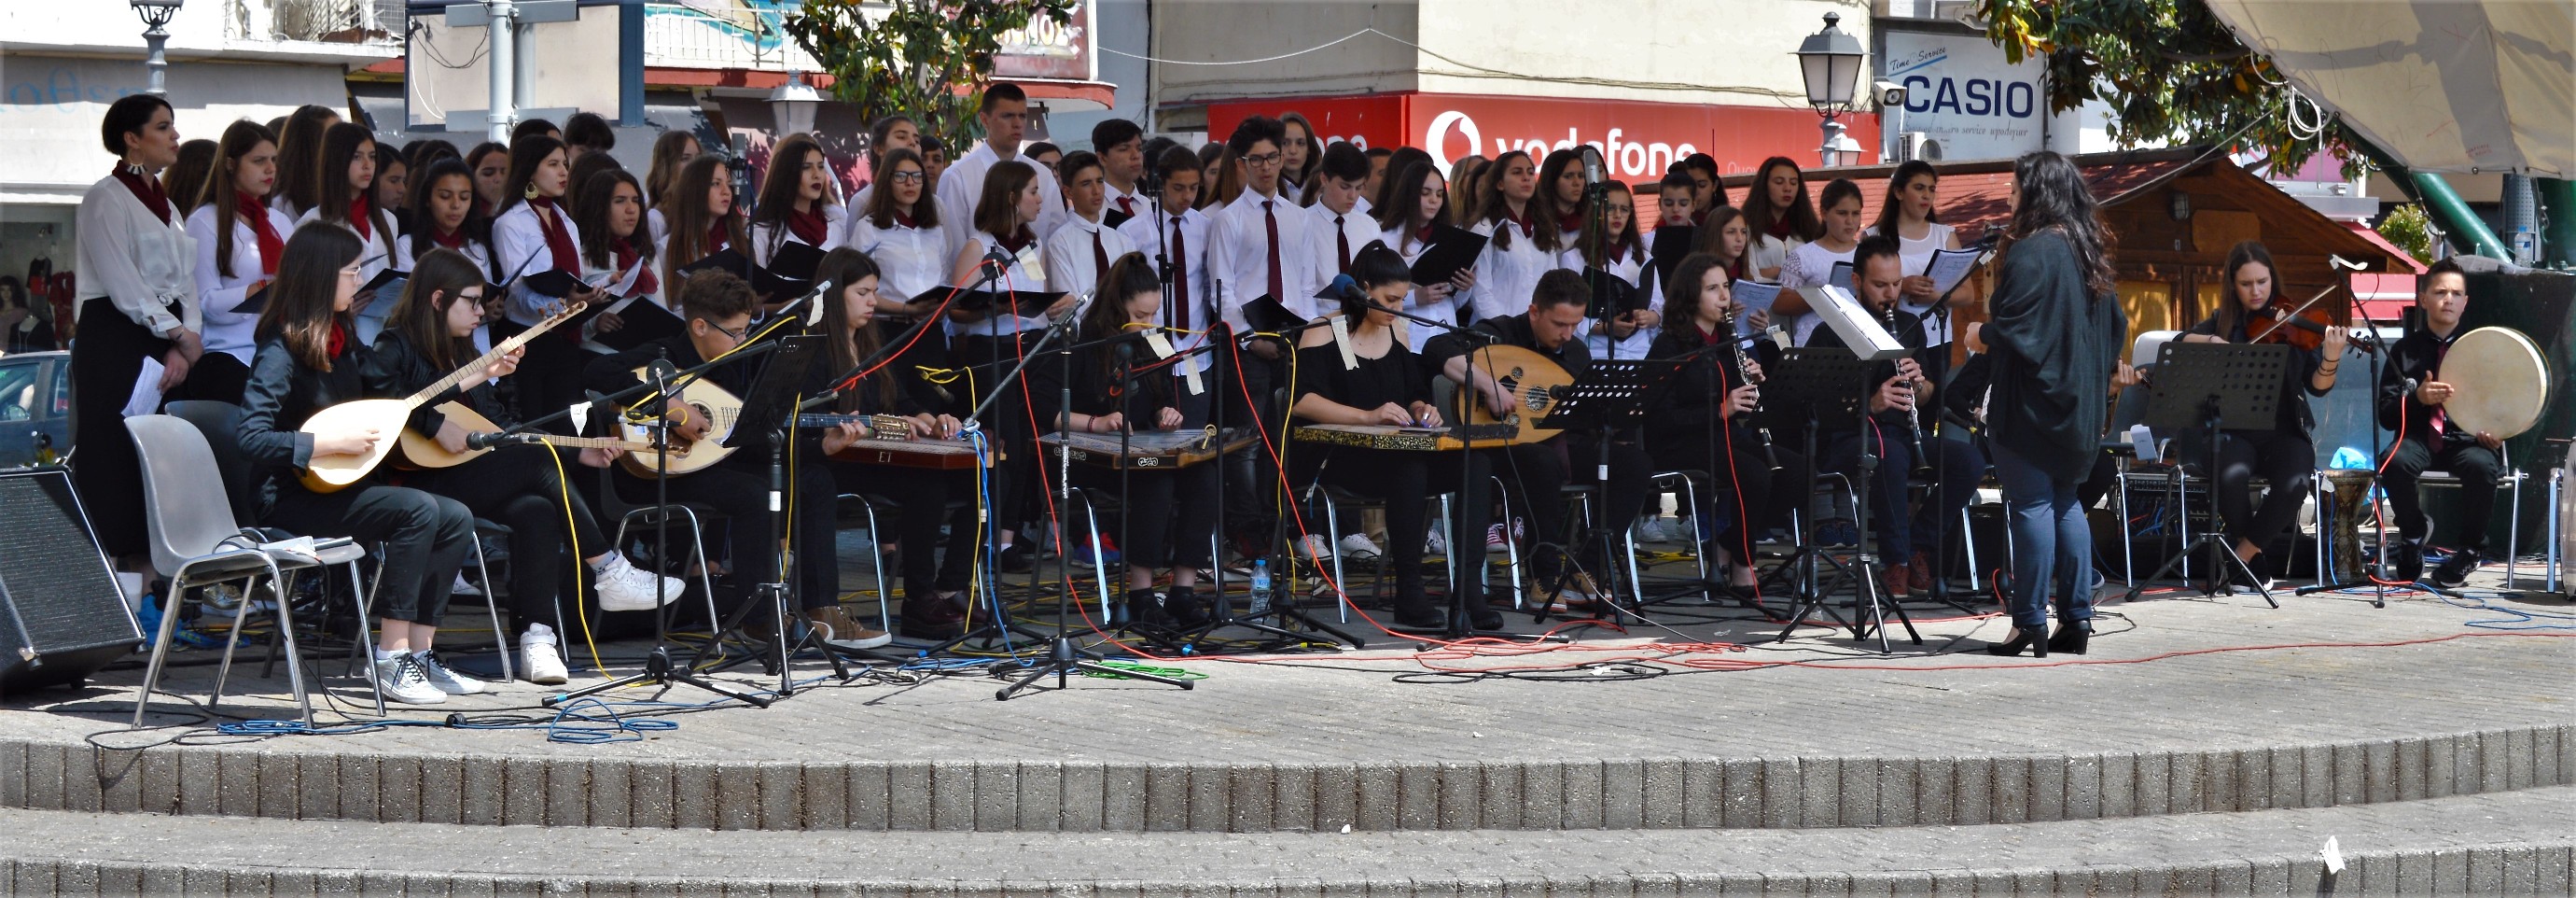 Το Μουσικό Σχολείο Τρικάλων στο Φεστιβάλ Βυζαντινής και Παραδοσιακής Μουσικής Καβάλας 4